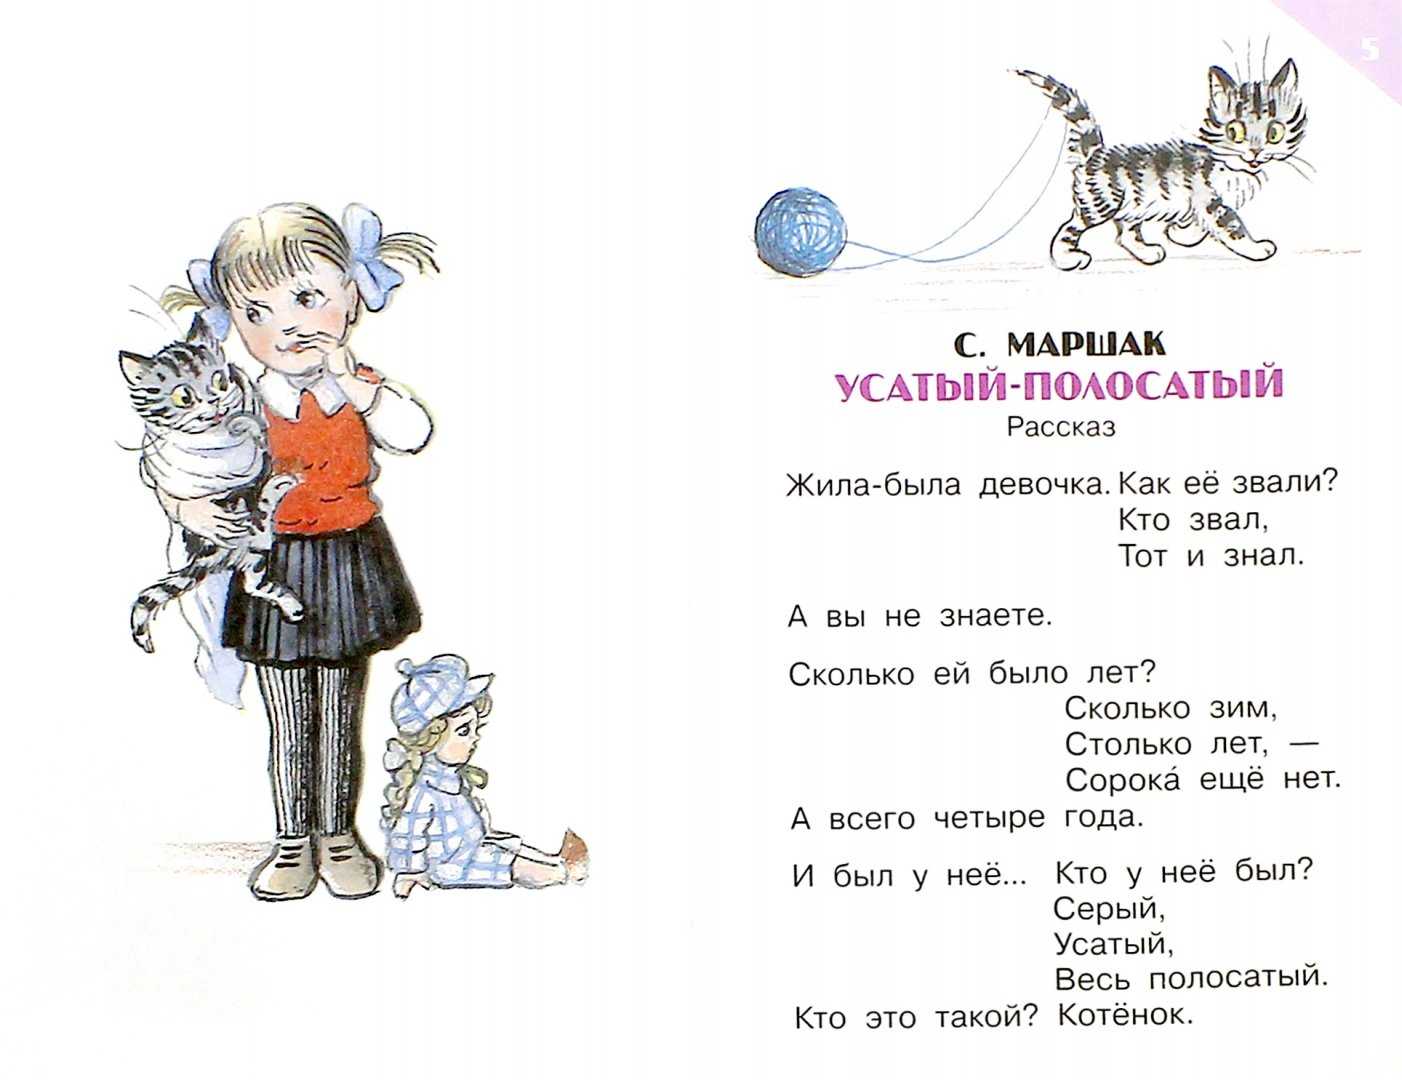 Стихи о кошках: самуил маршак, саша черный, даниил хармс на сайте кошки масяни